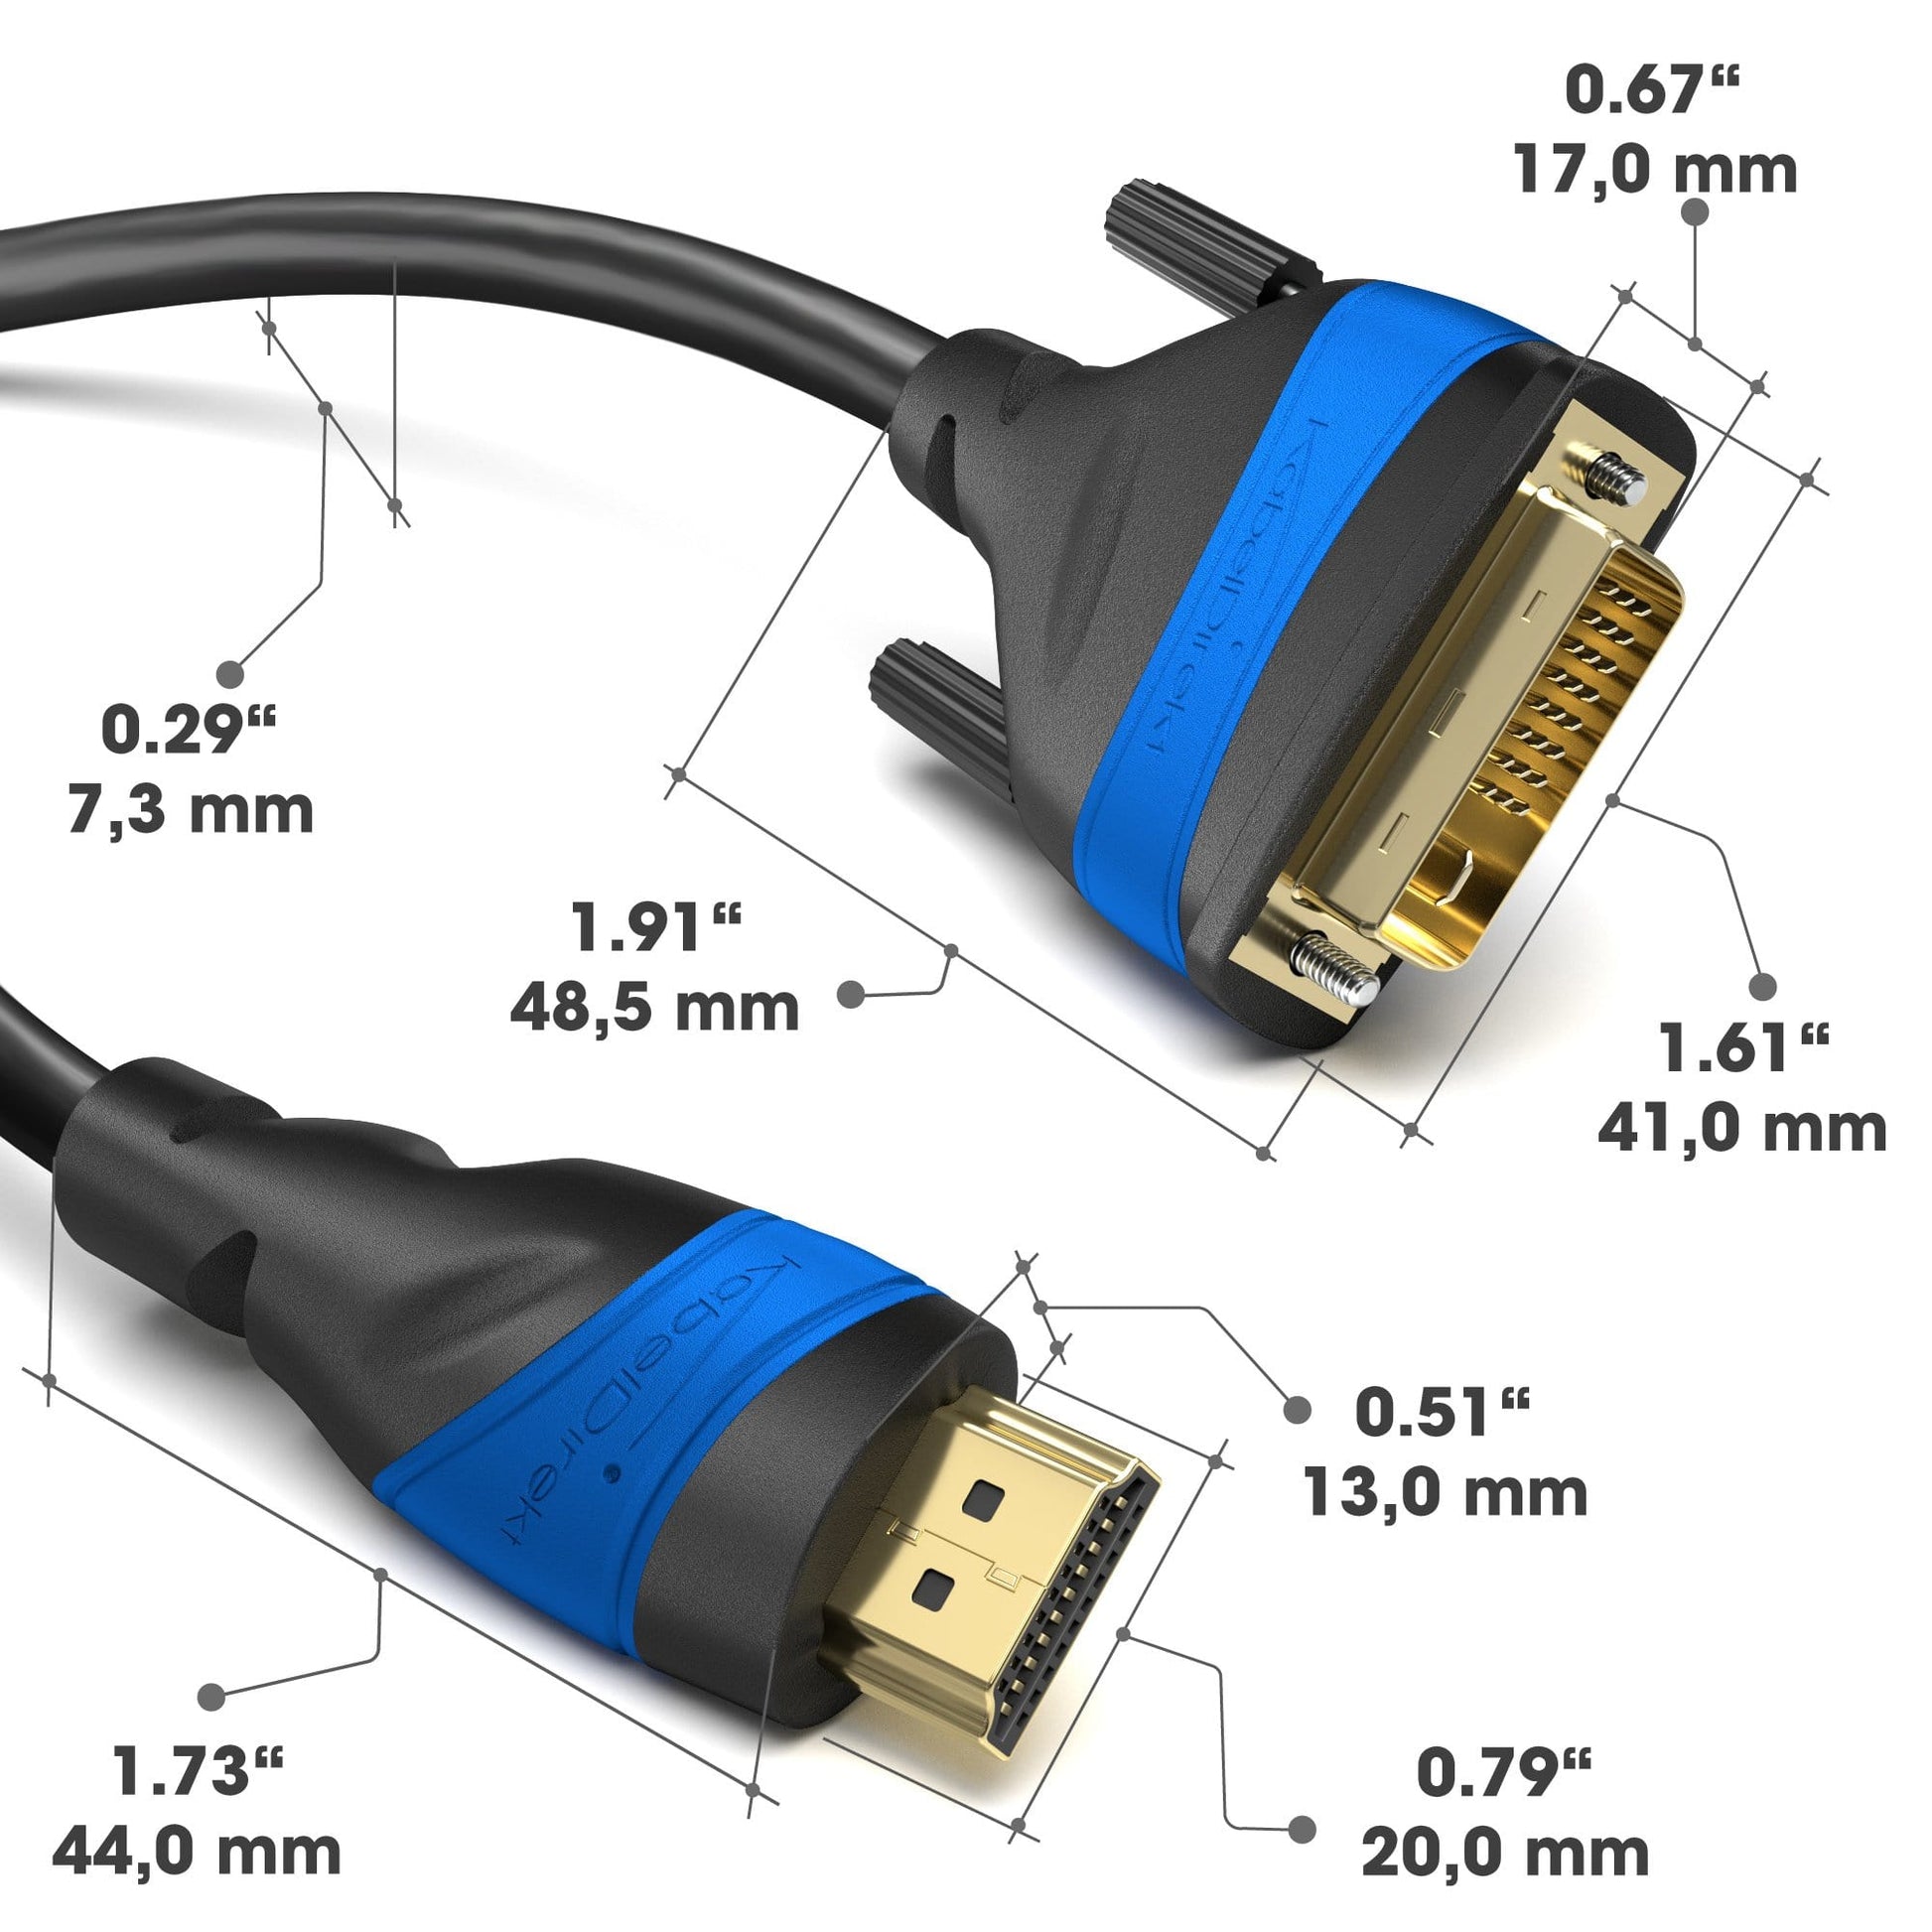 KLOTZ - Adaptateur HDMI embase A - Fiche DVI-D - PhotoCineShop